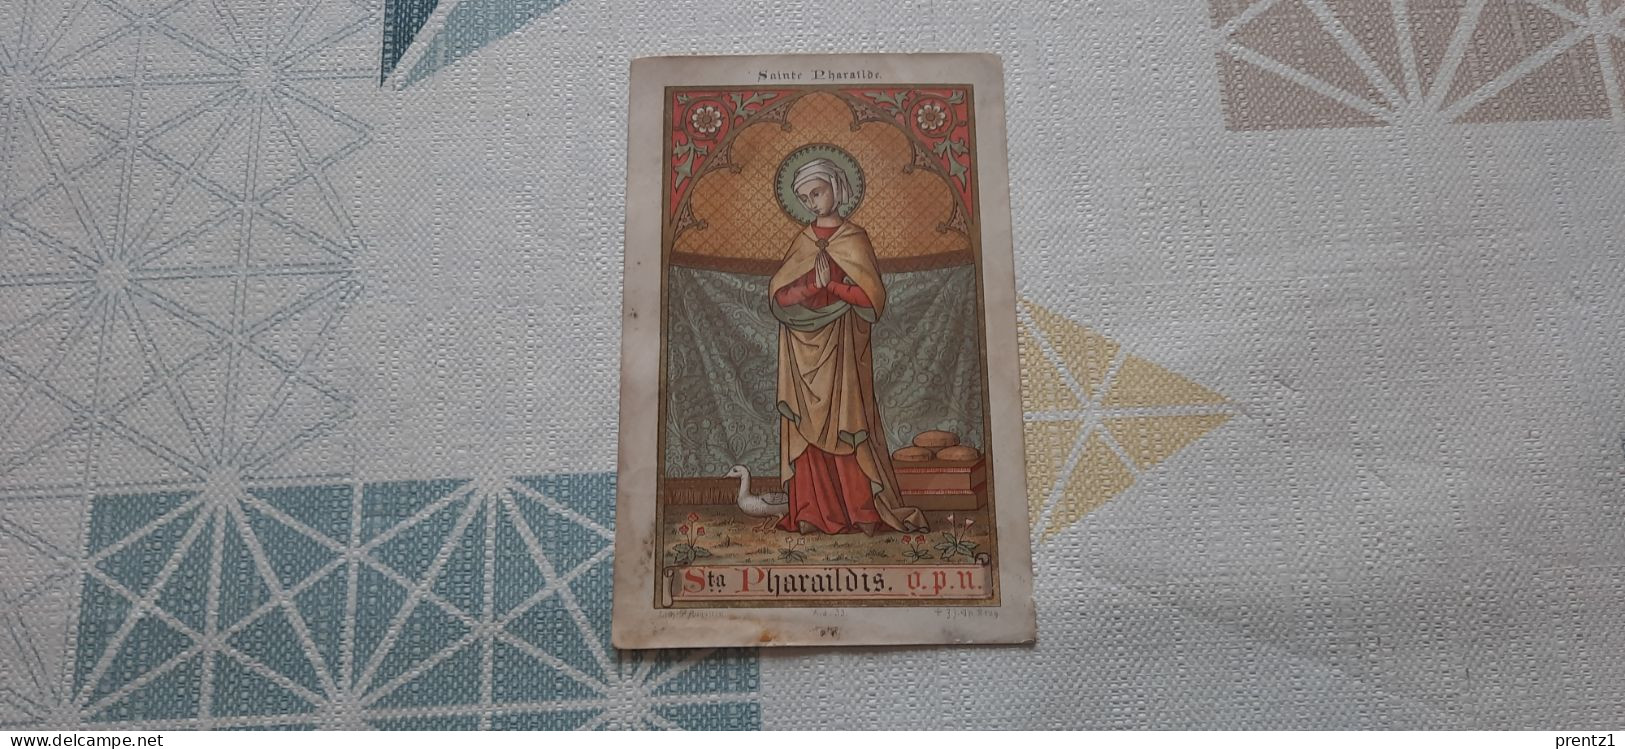 Heilige Saint Pharailde Kaartje - Andachtsbilder